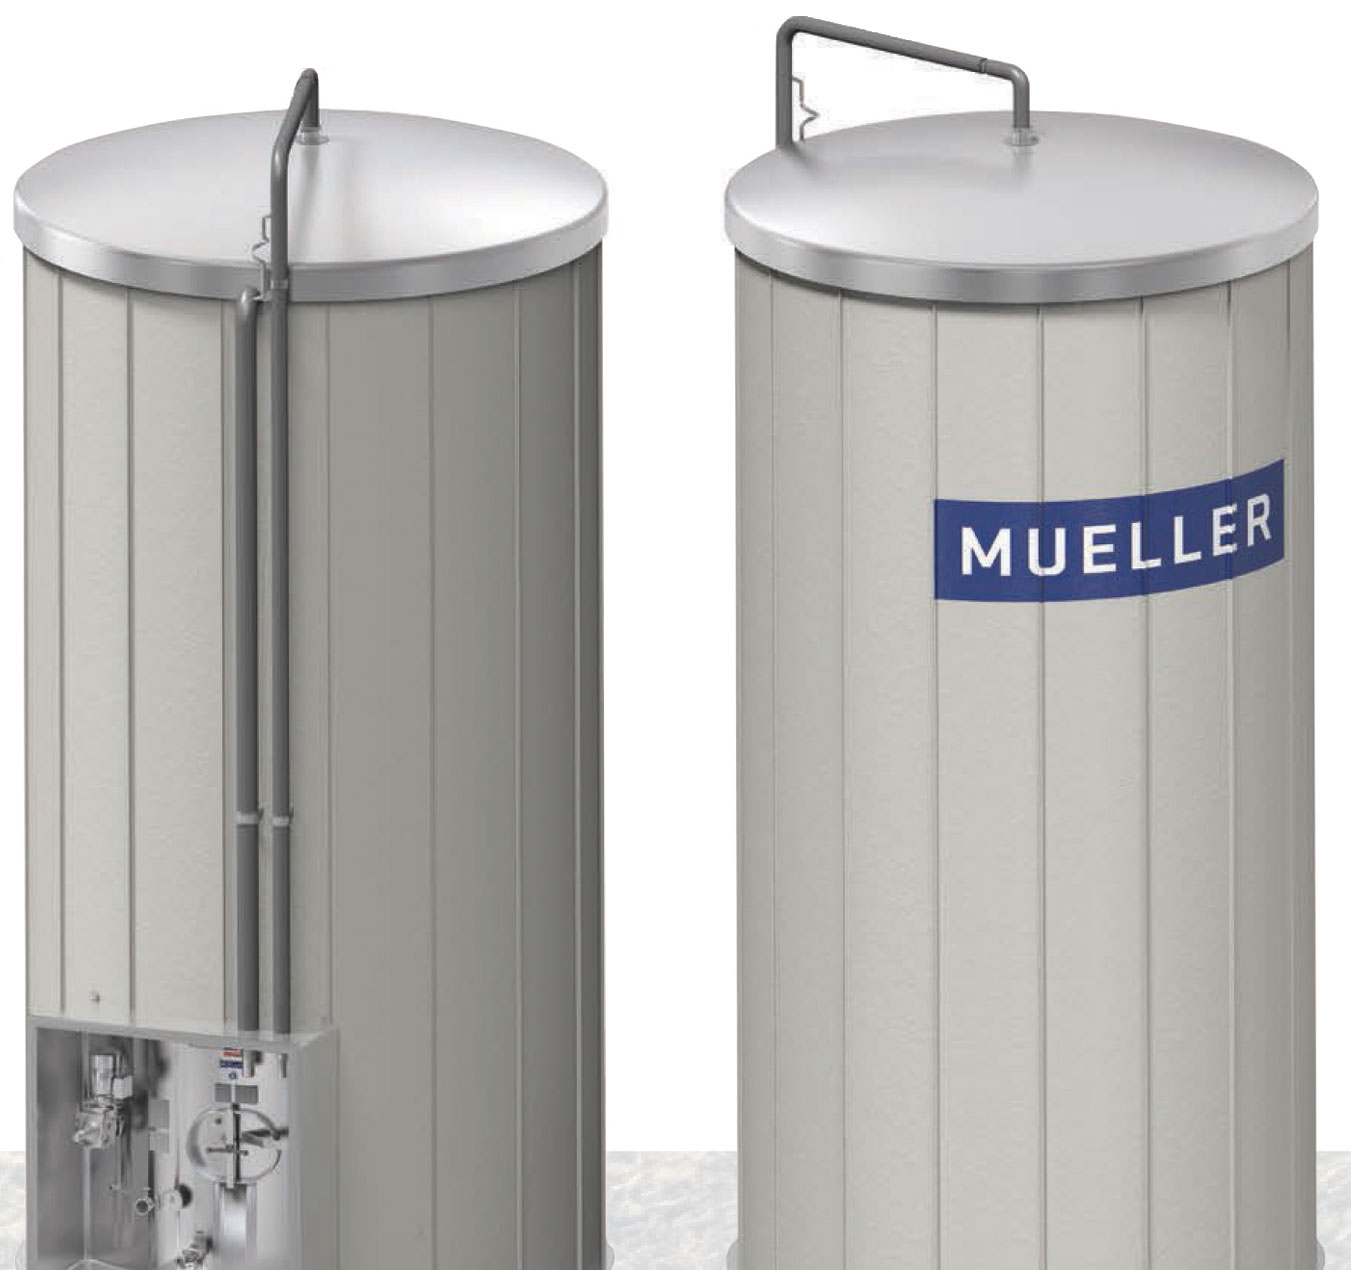  Tour à lait Mueller